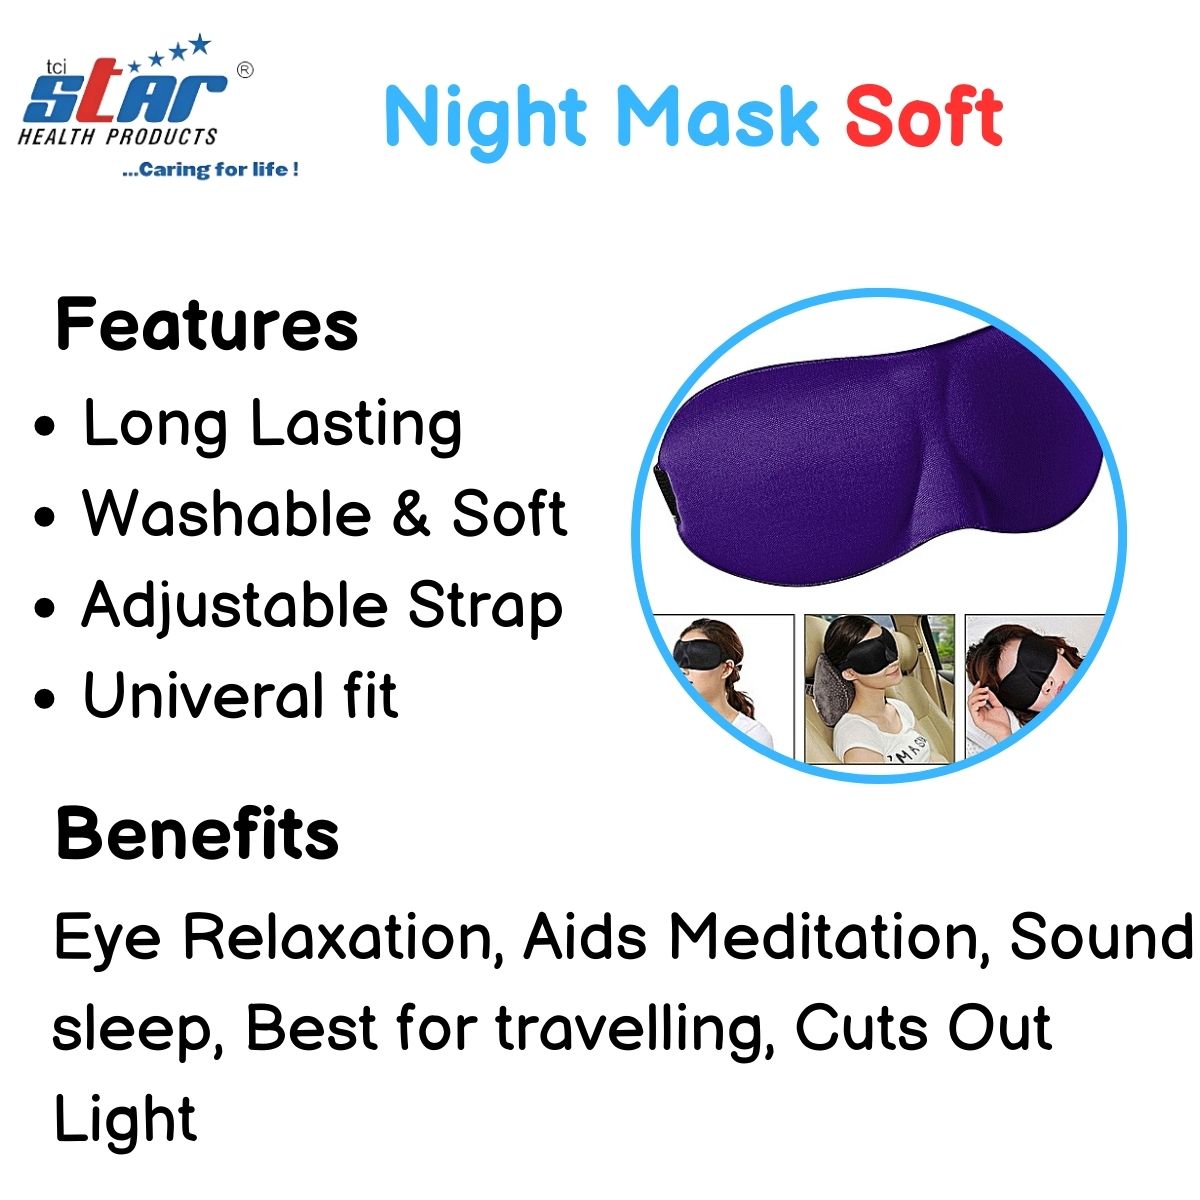 Night Mask Soft